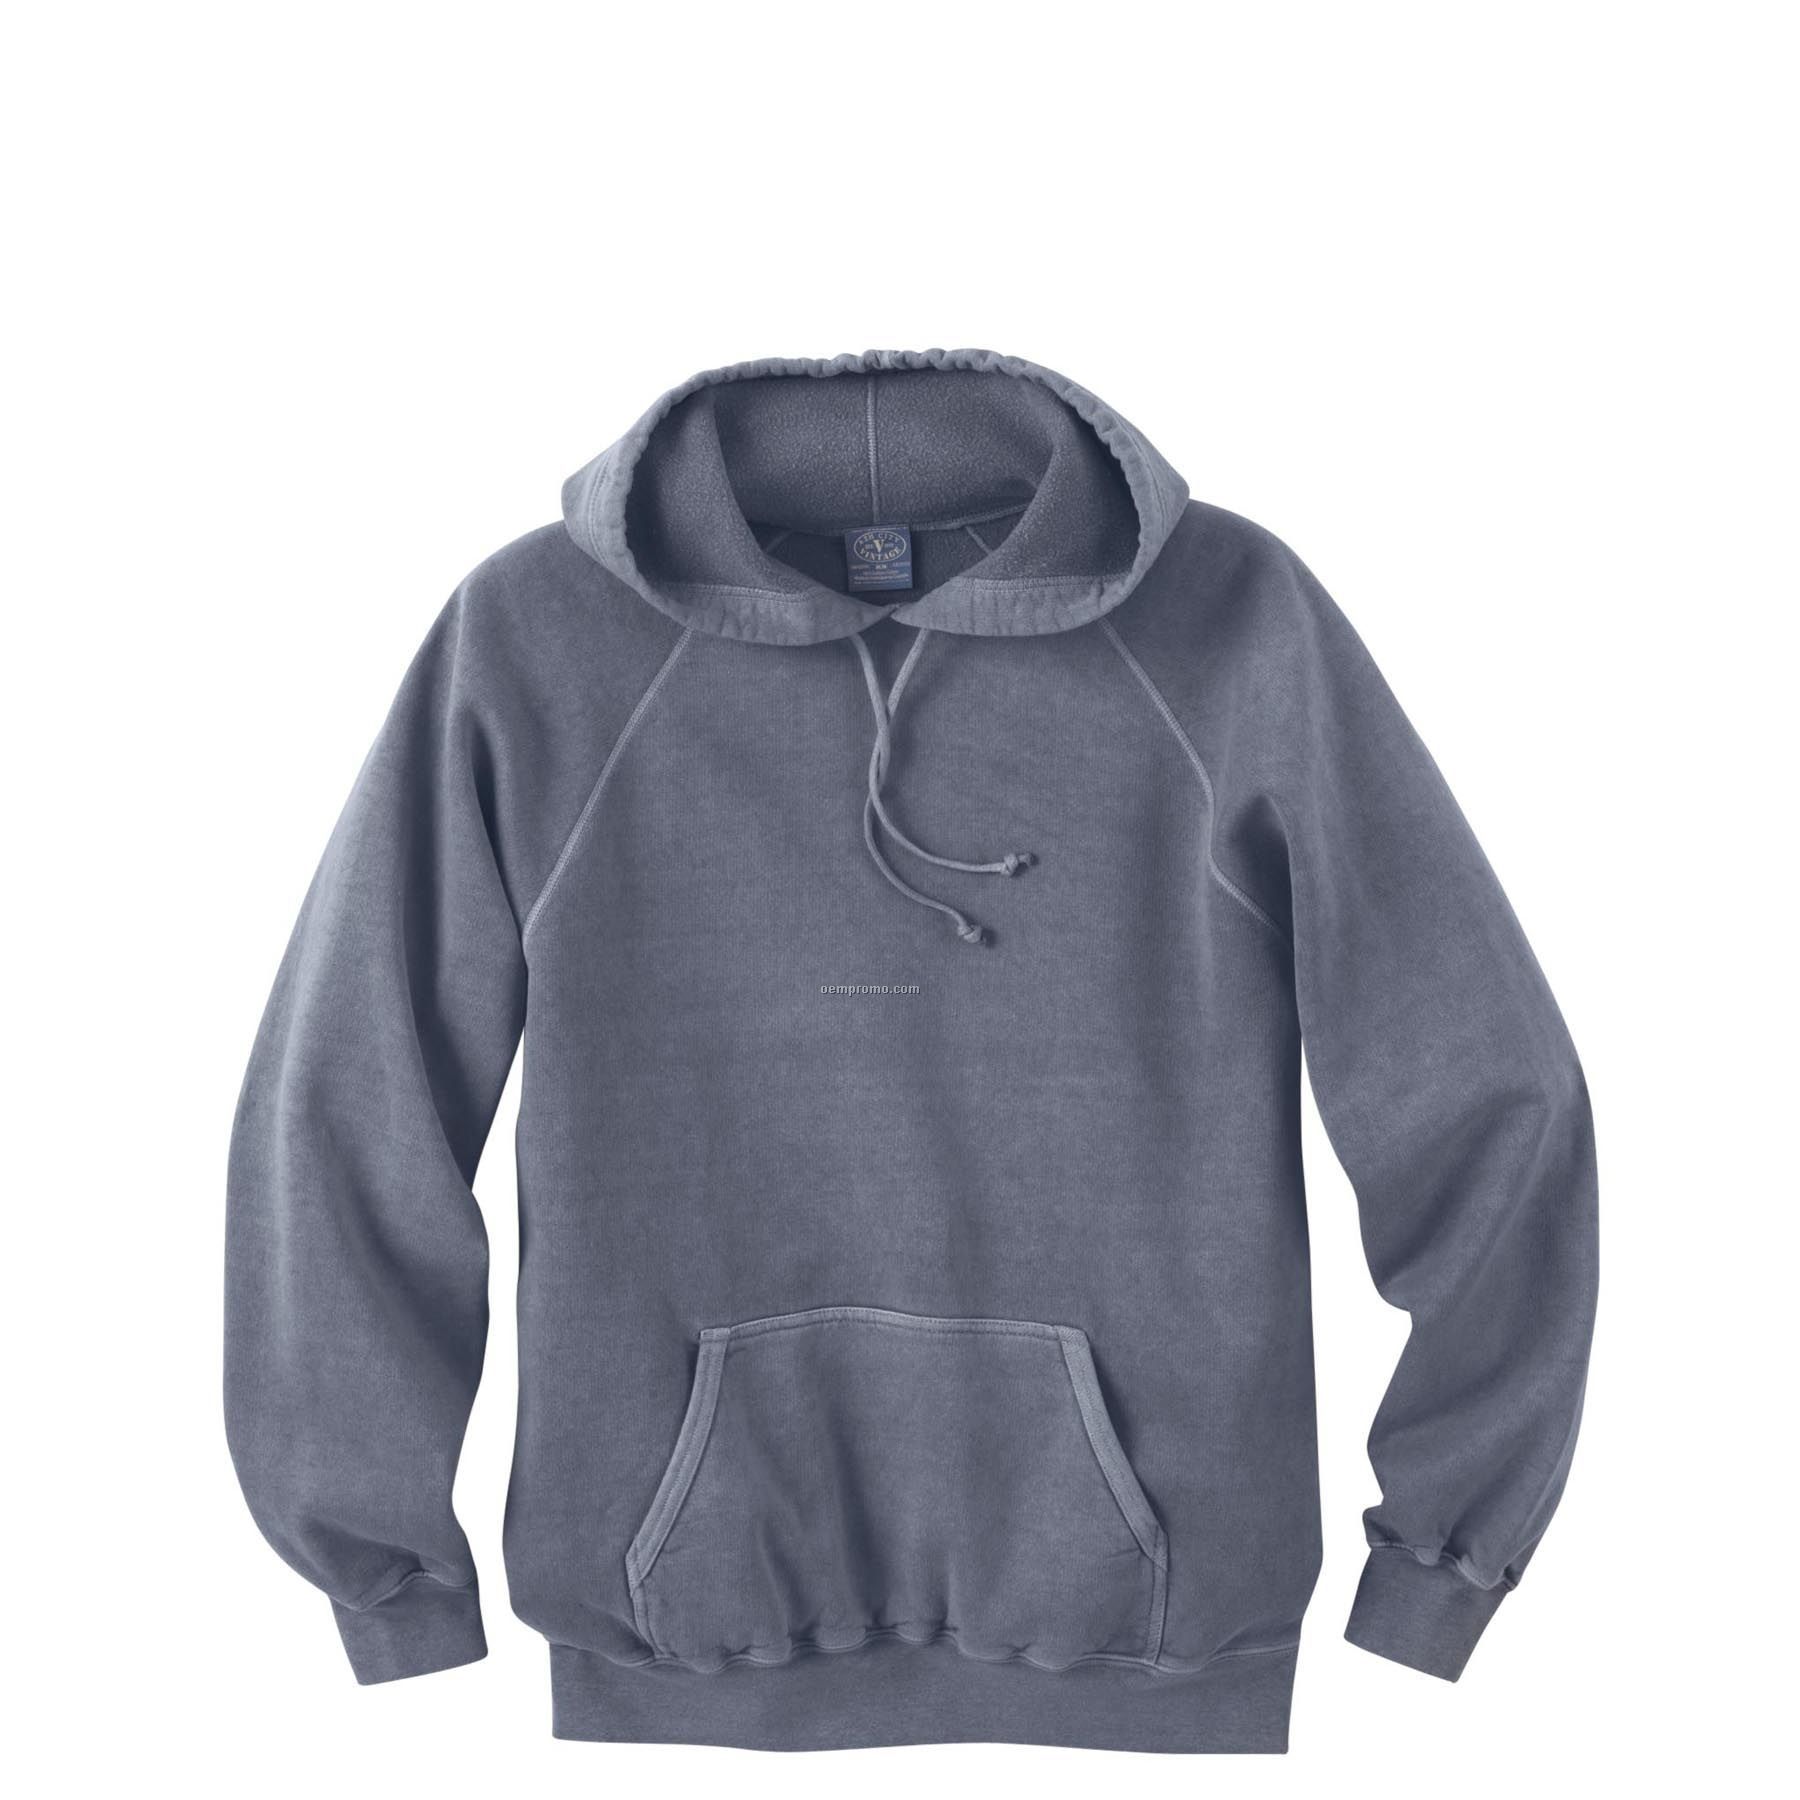 Men's Vintage Hooded Popover Sweatshirt